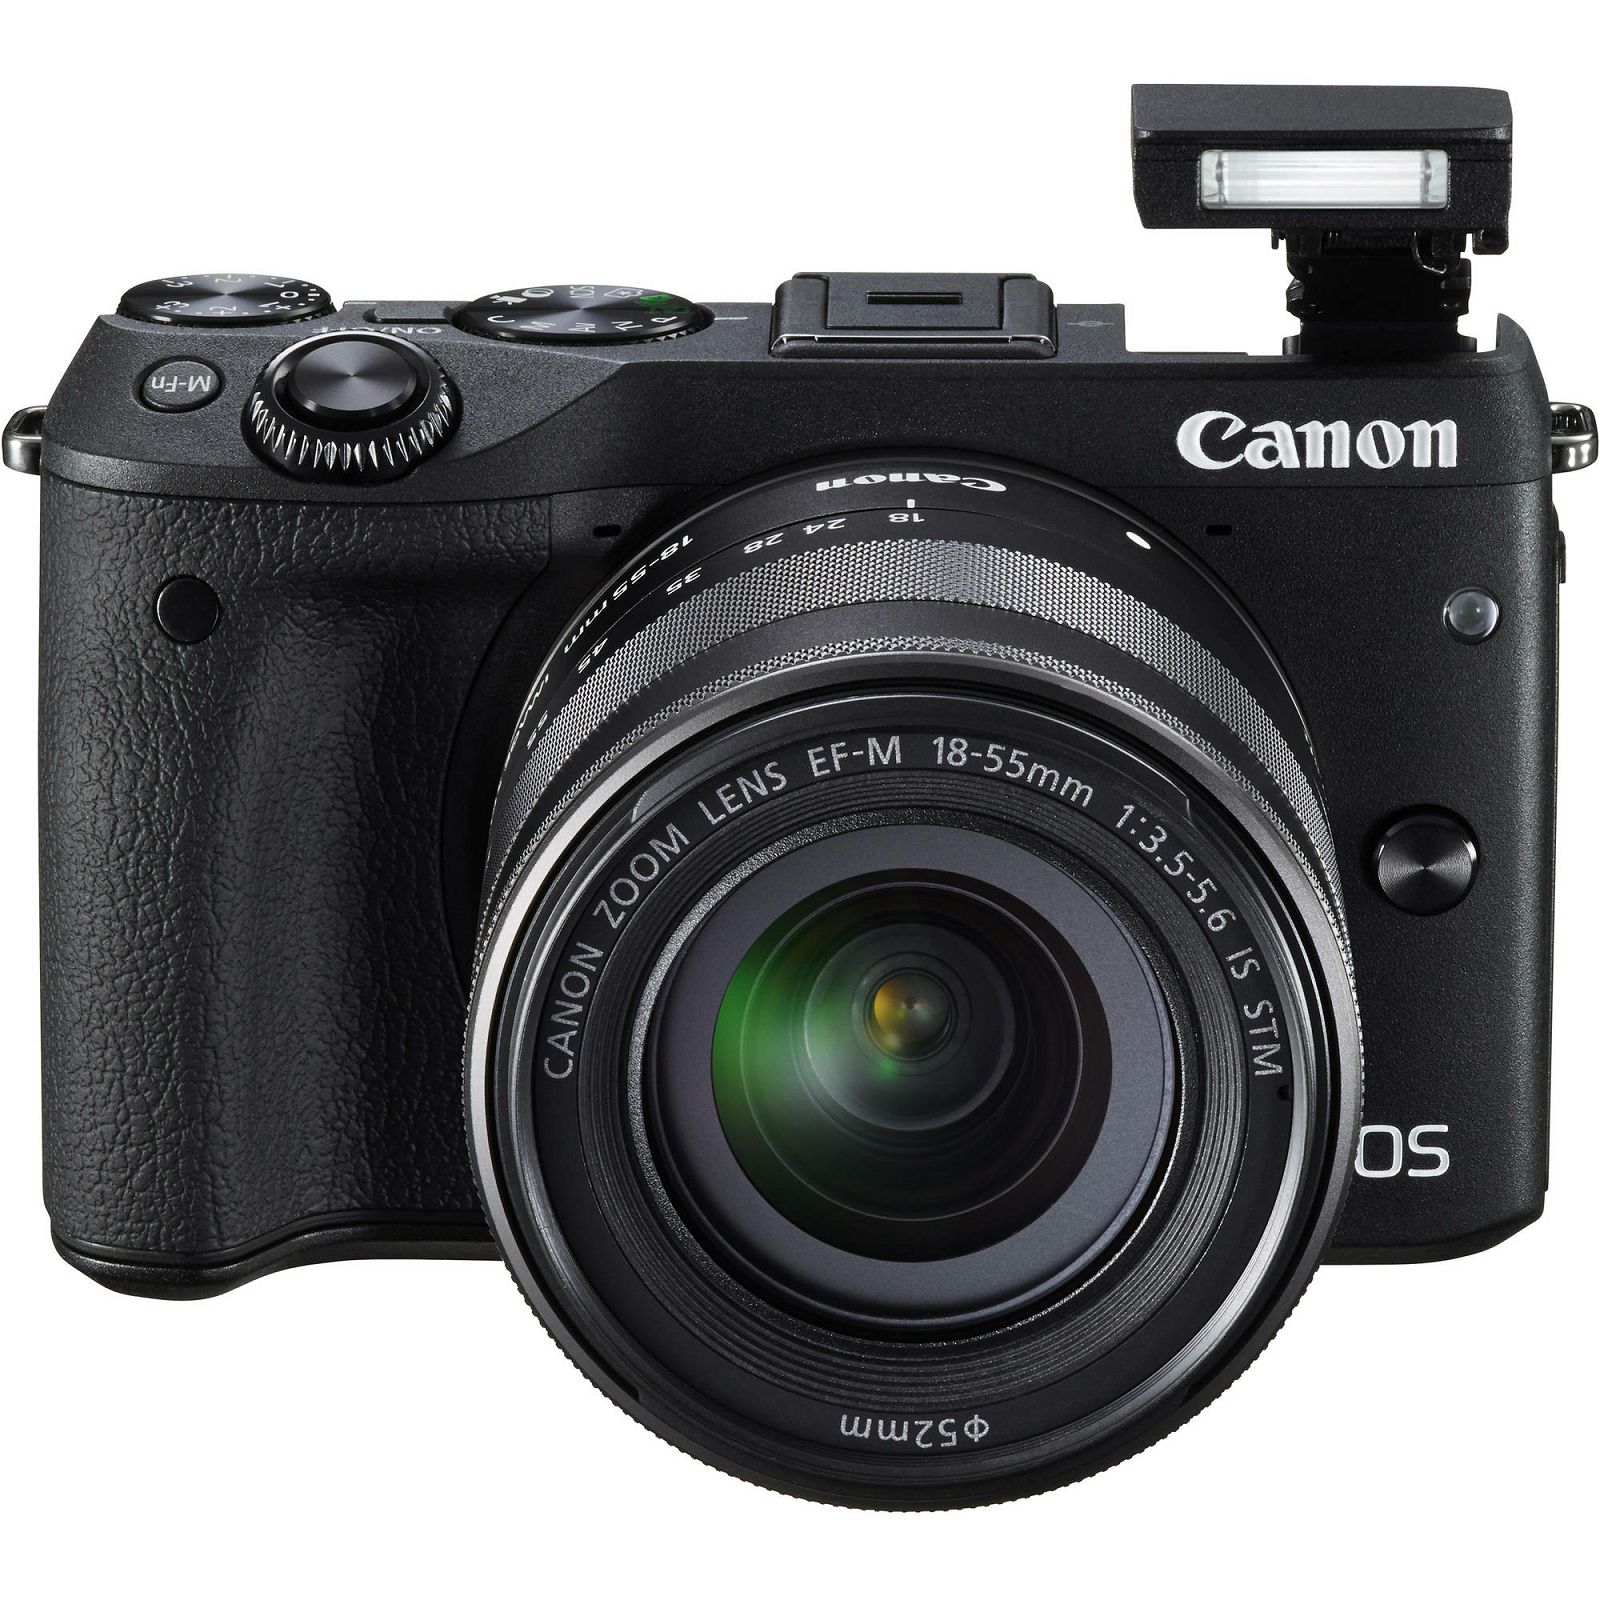 Canon EOS M3 + 18-55 IS STM Black crni Mirrorless Digital Camera Digitalni fotoaparat s objektivom M18-55S EF-M 18-55mm (9694B012AA)